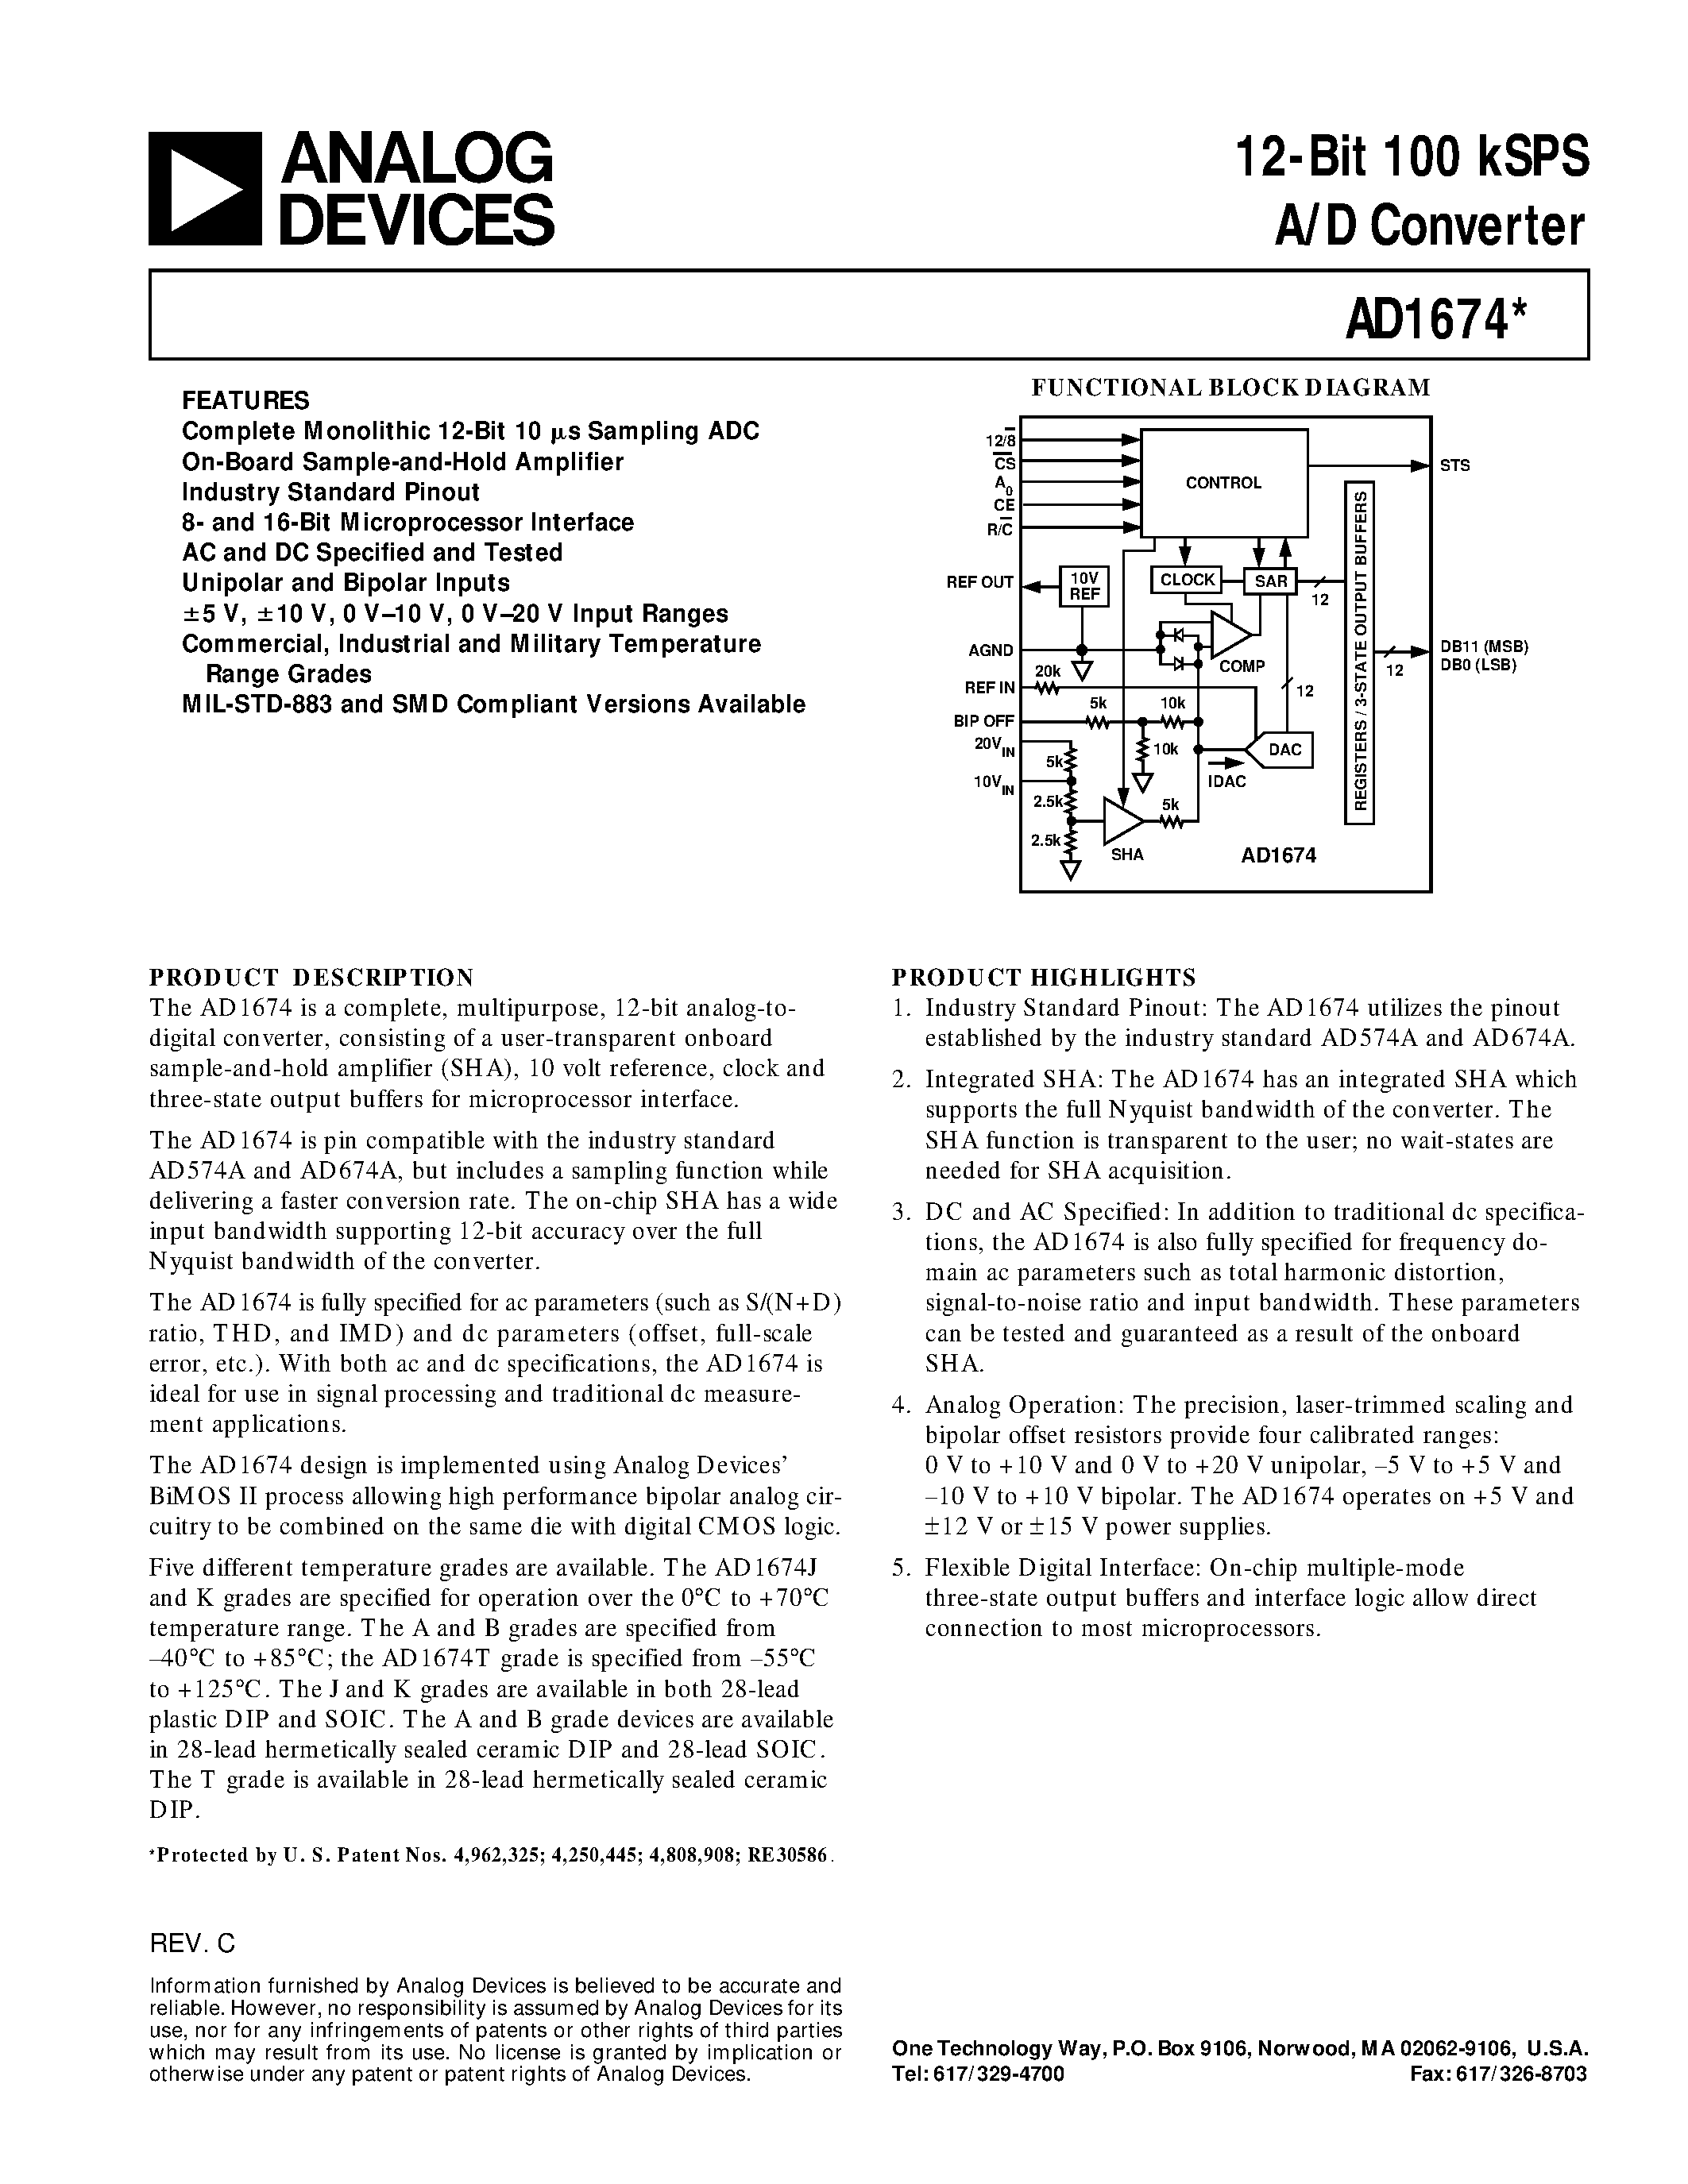 Datasheet AD1674B - 12-Bit 100 kSPS A/D Converter page 1